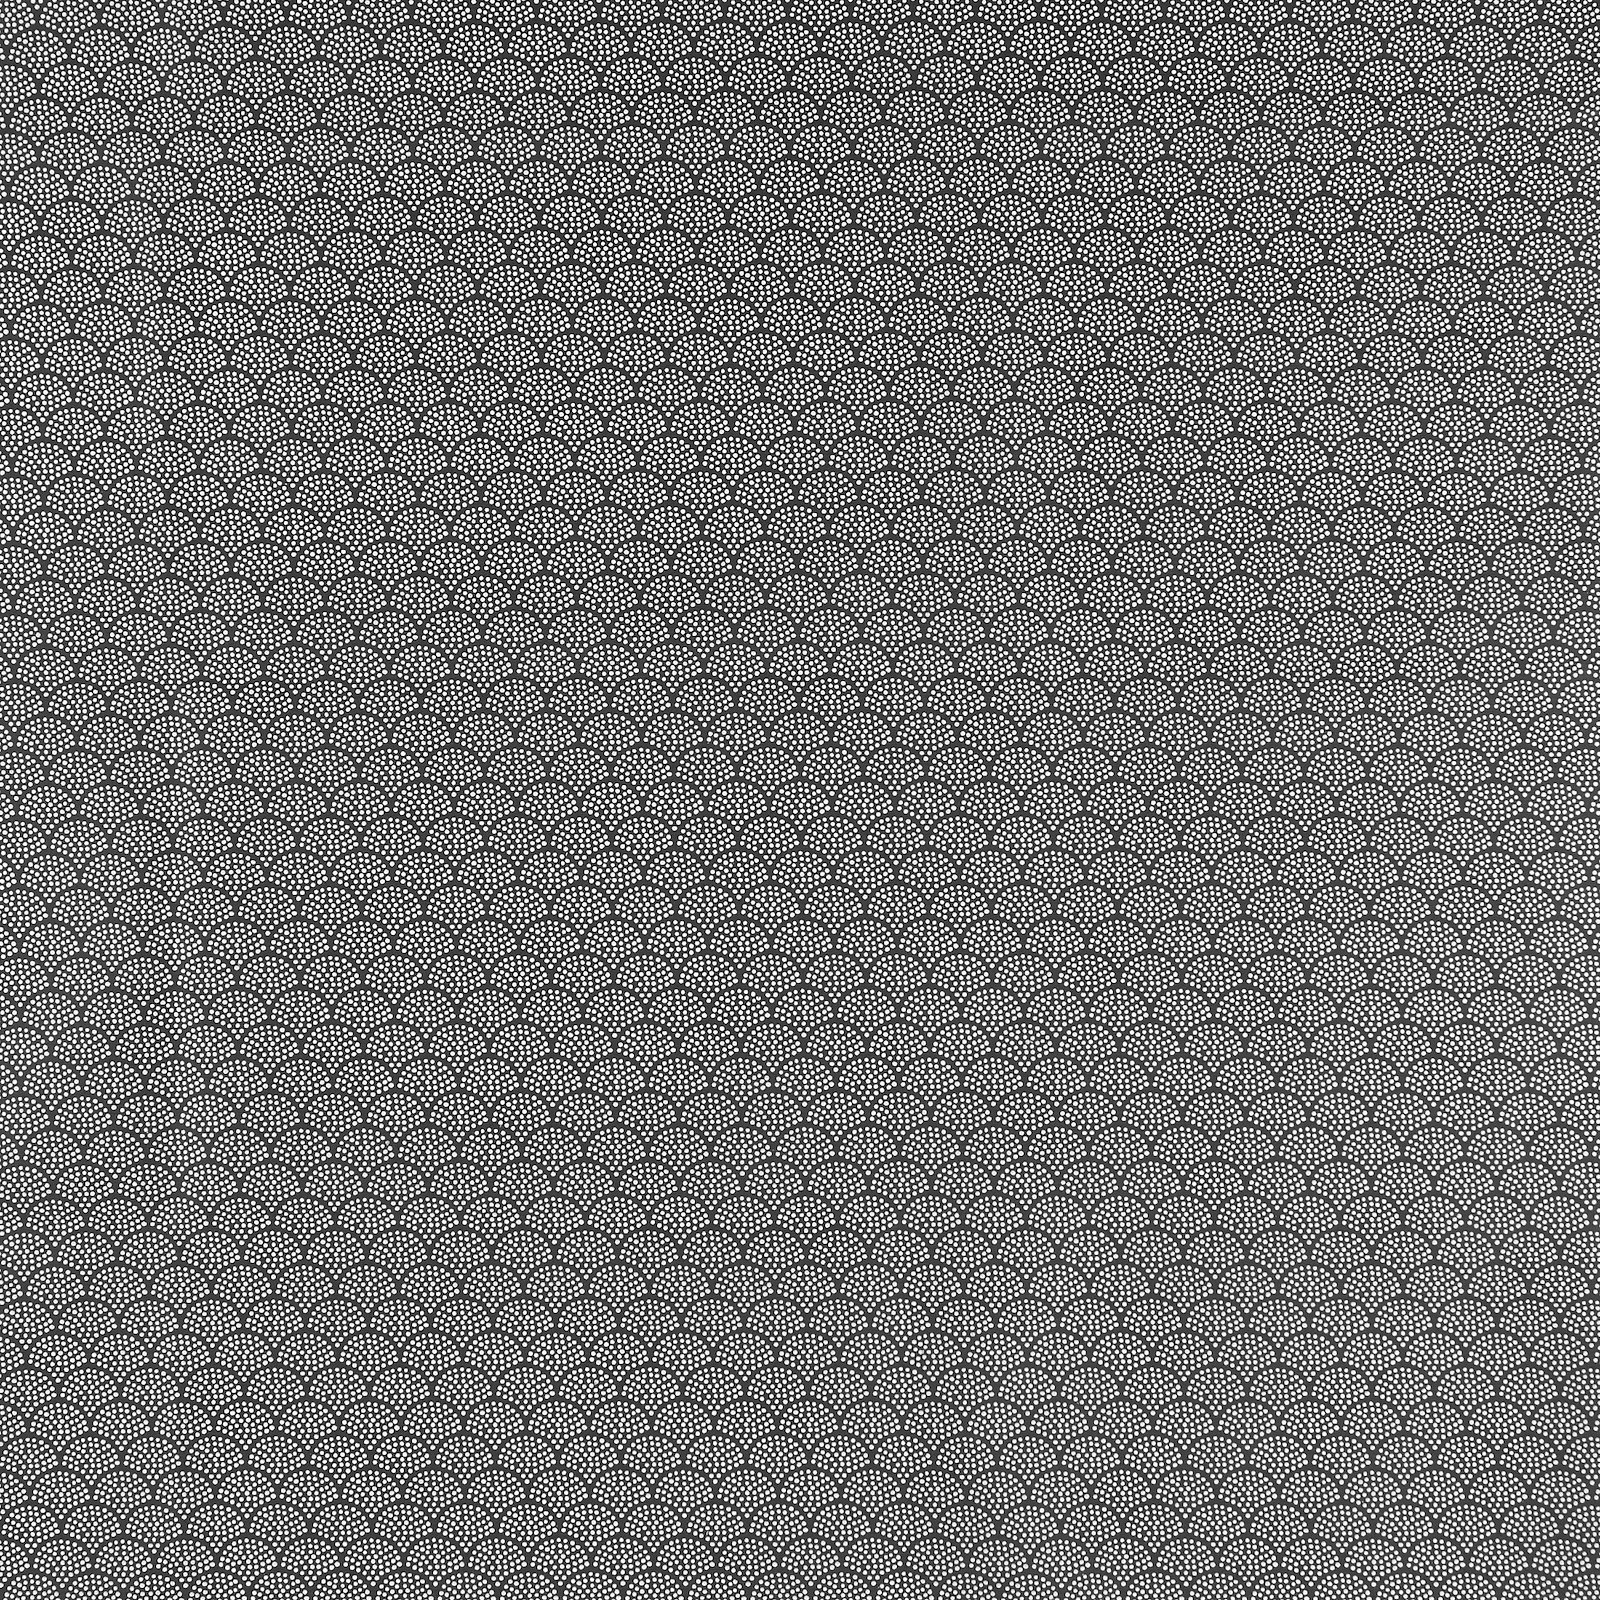 Tekstilvoksduk m mørke grå/hvite buer 870344_pack_sp